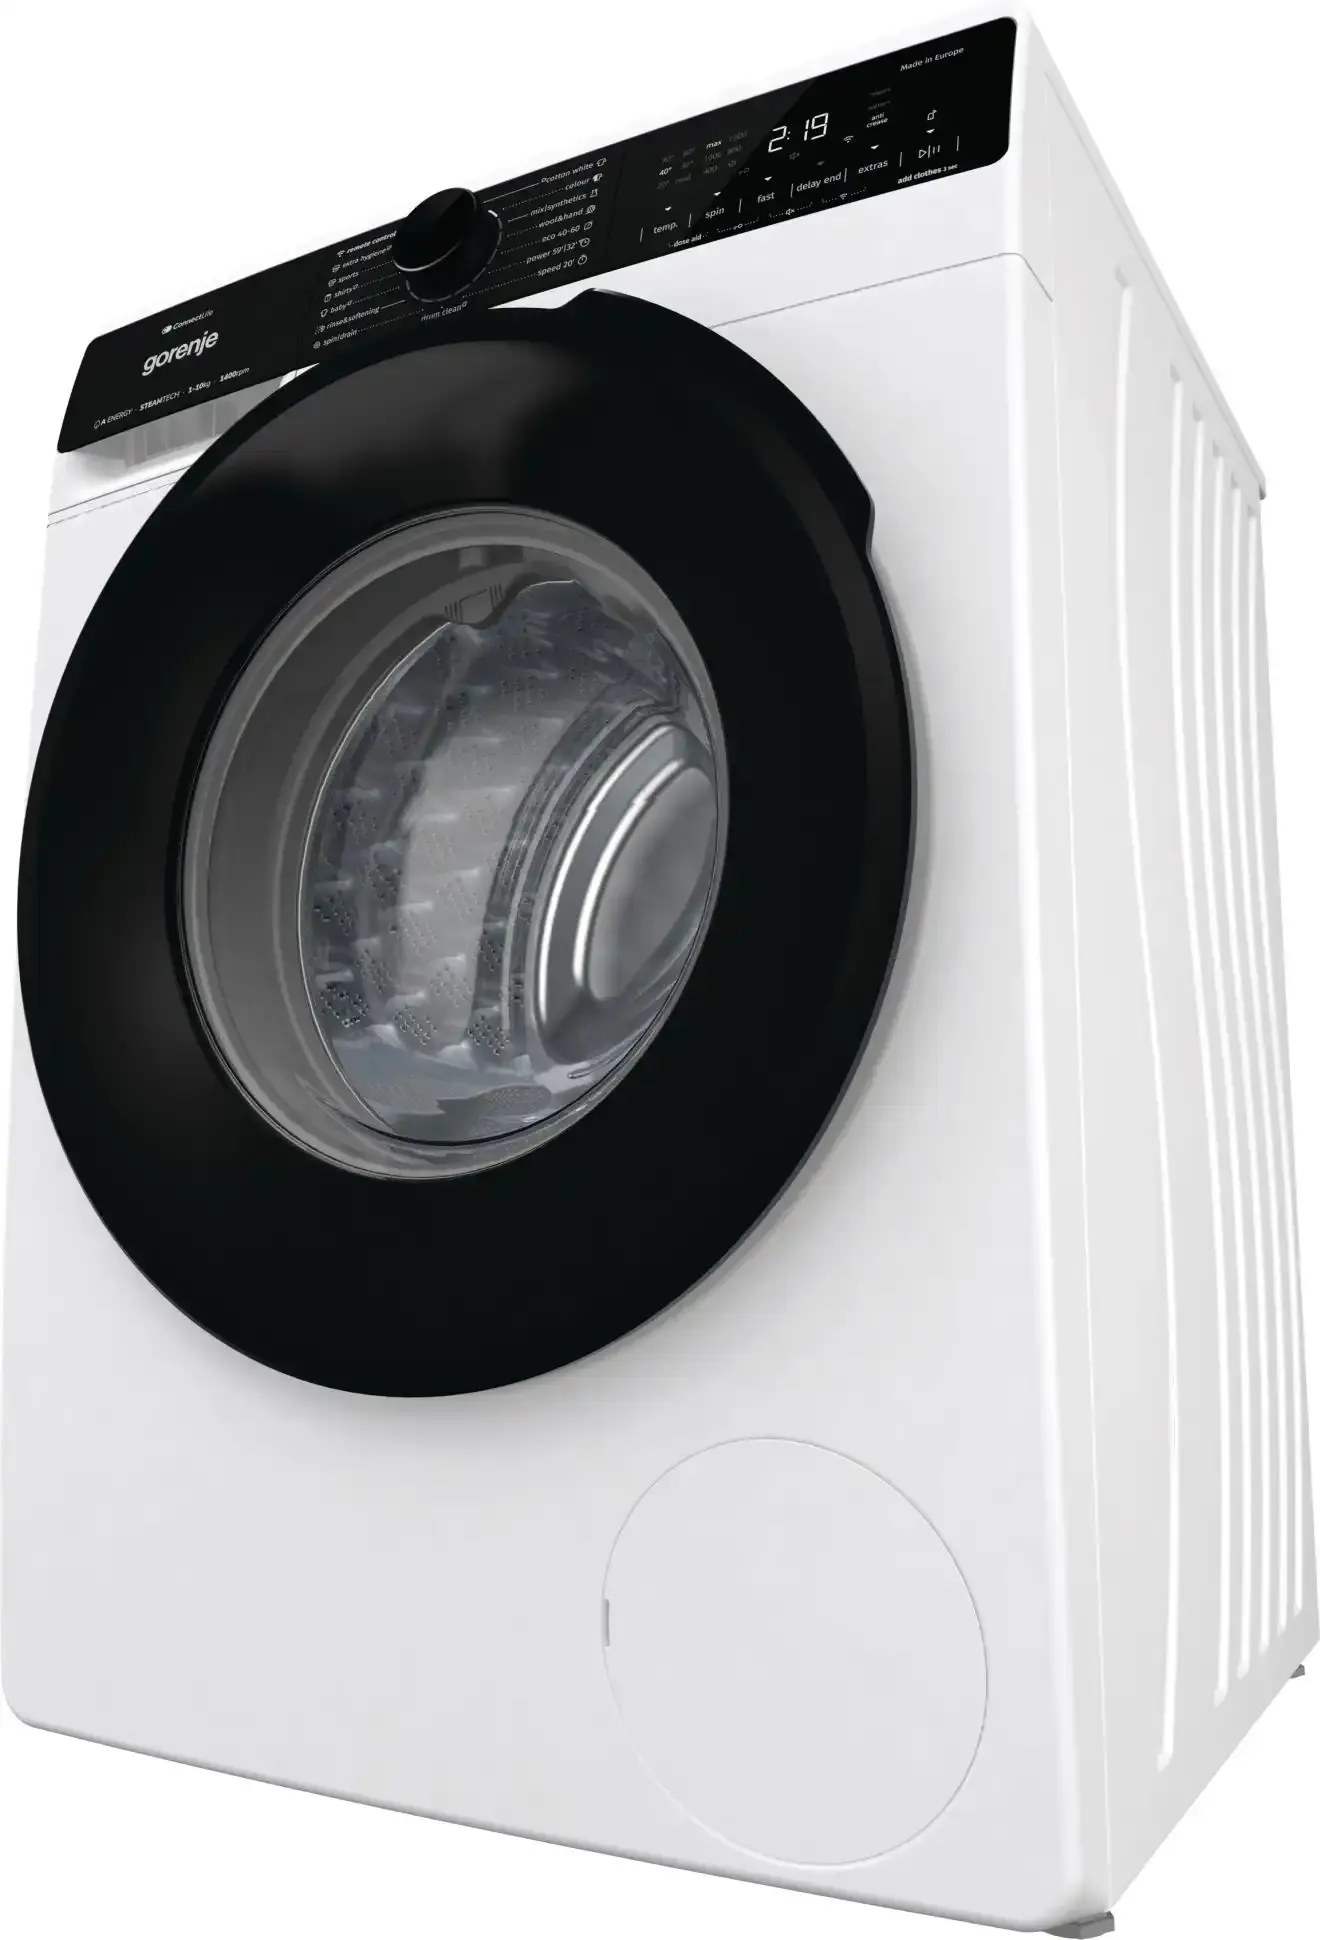 Selected image for GORENJE W2PNA 14 APWIFI Mašina za pranje veša, 10 kg, 1400 obrt/min, Bela